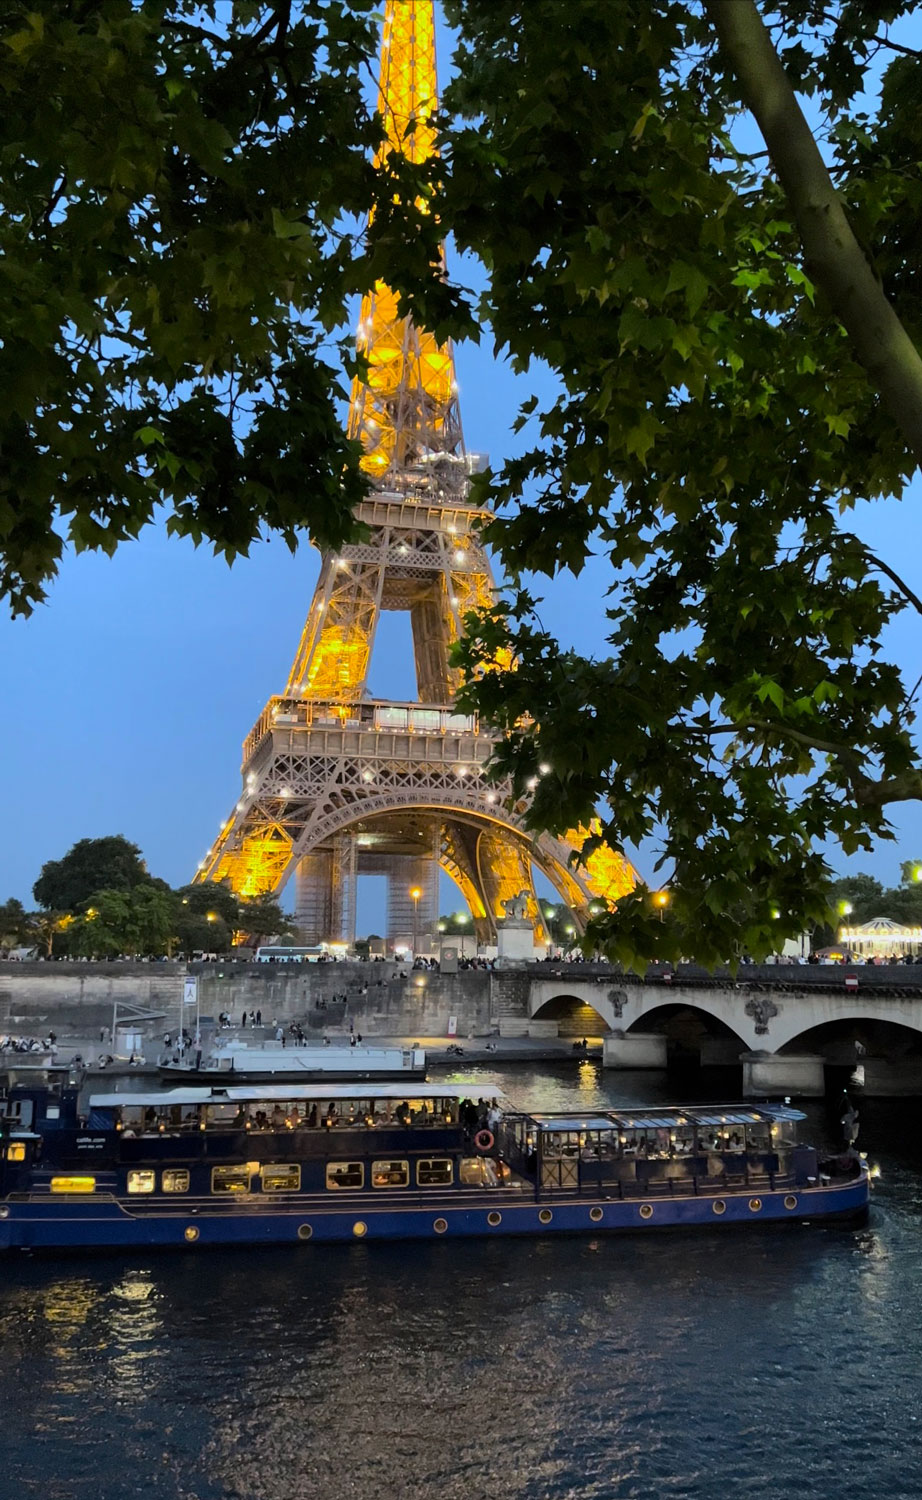 tour Eiffel lit up